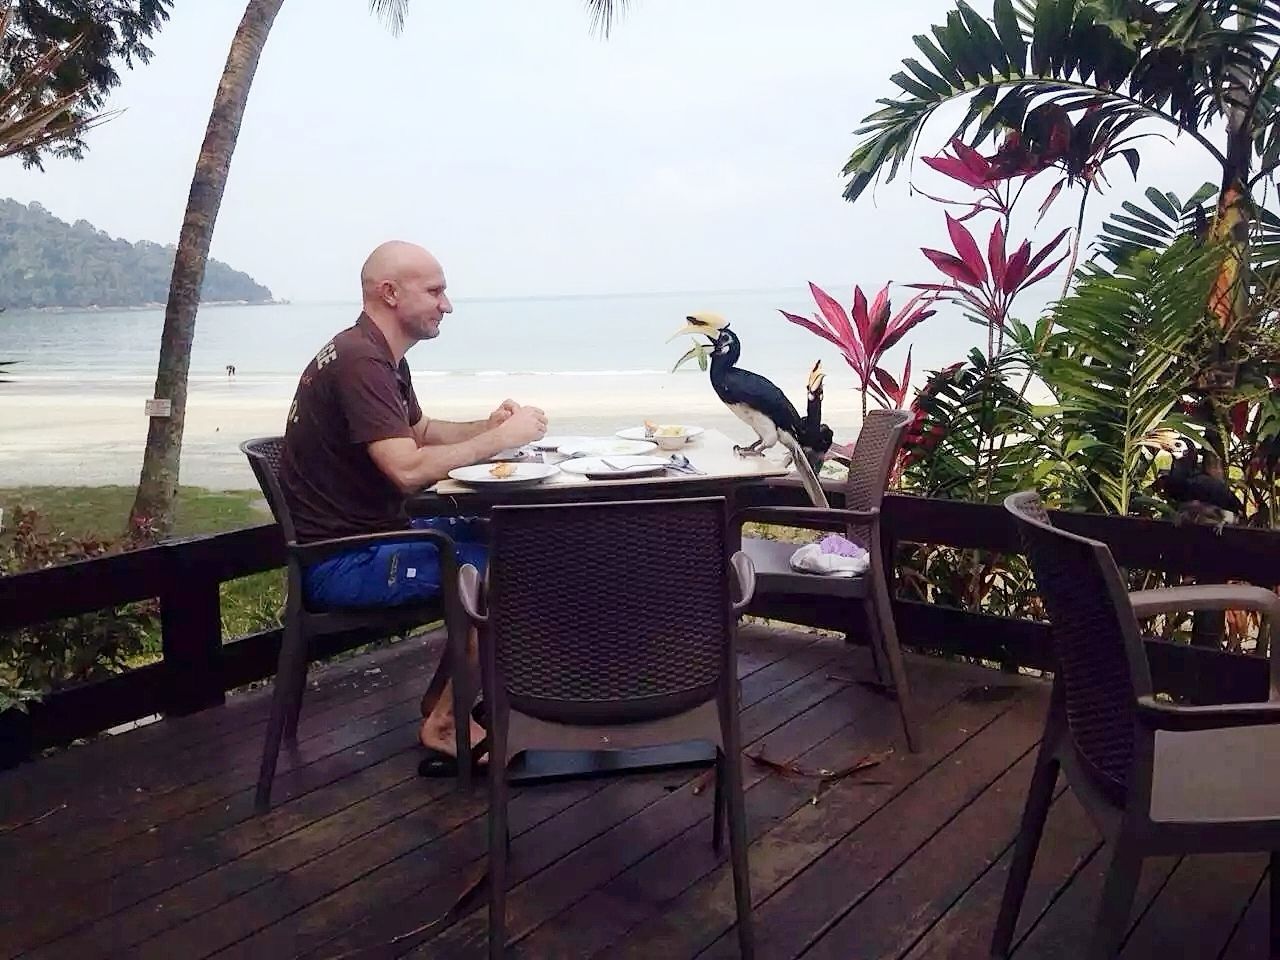 度假起床吃早餐，隔壁桌的鸟与人的爱，让我感觉到动物与人的和平相处，这可是一个私人岛屿